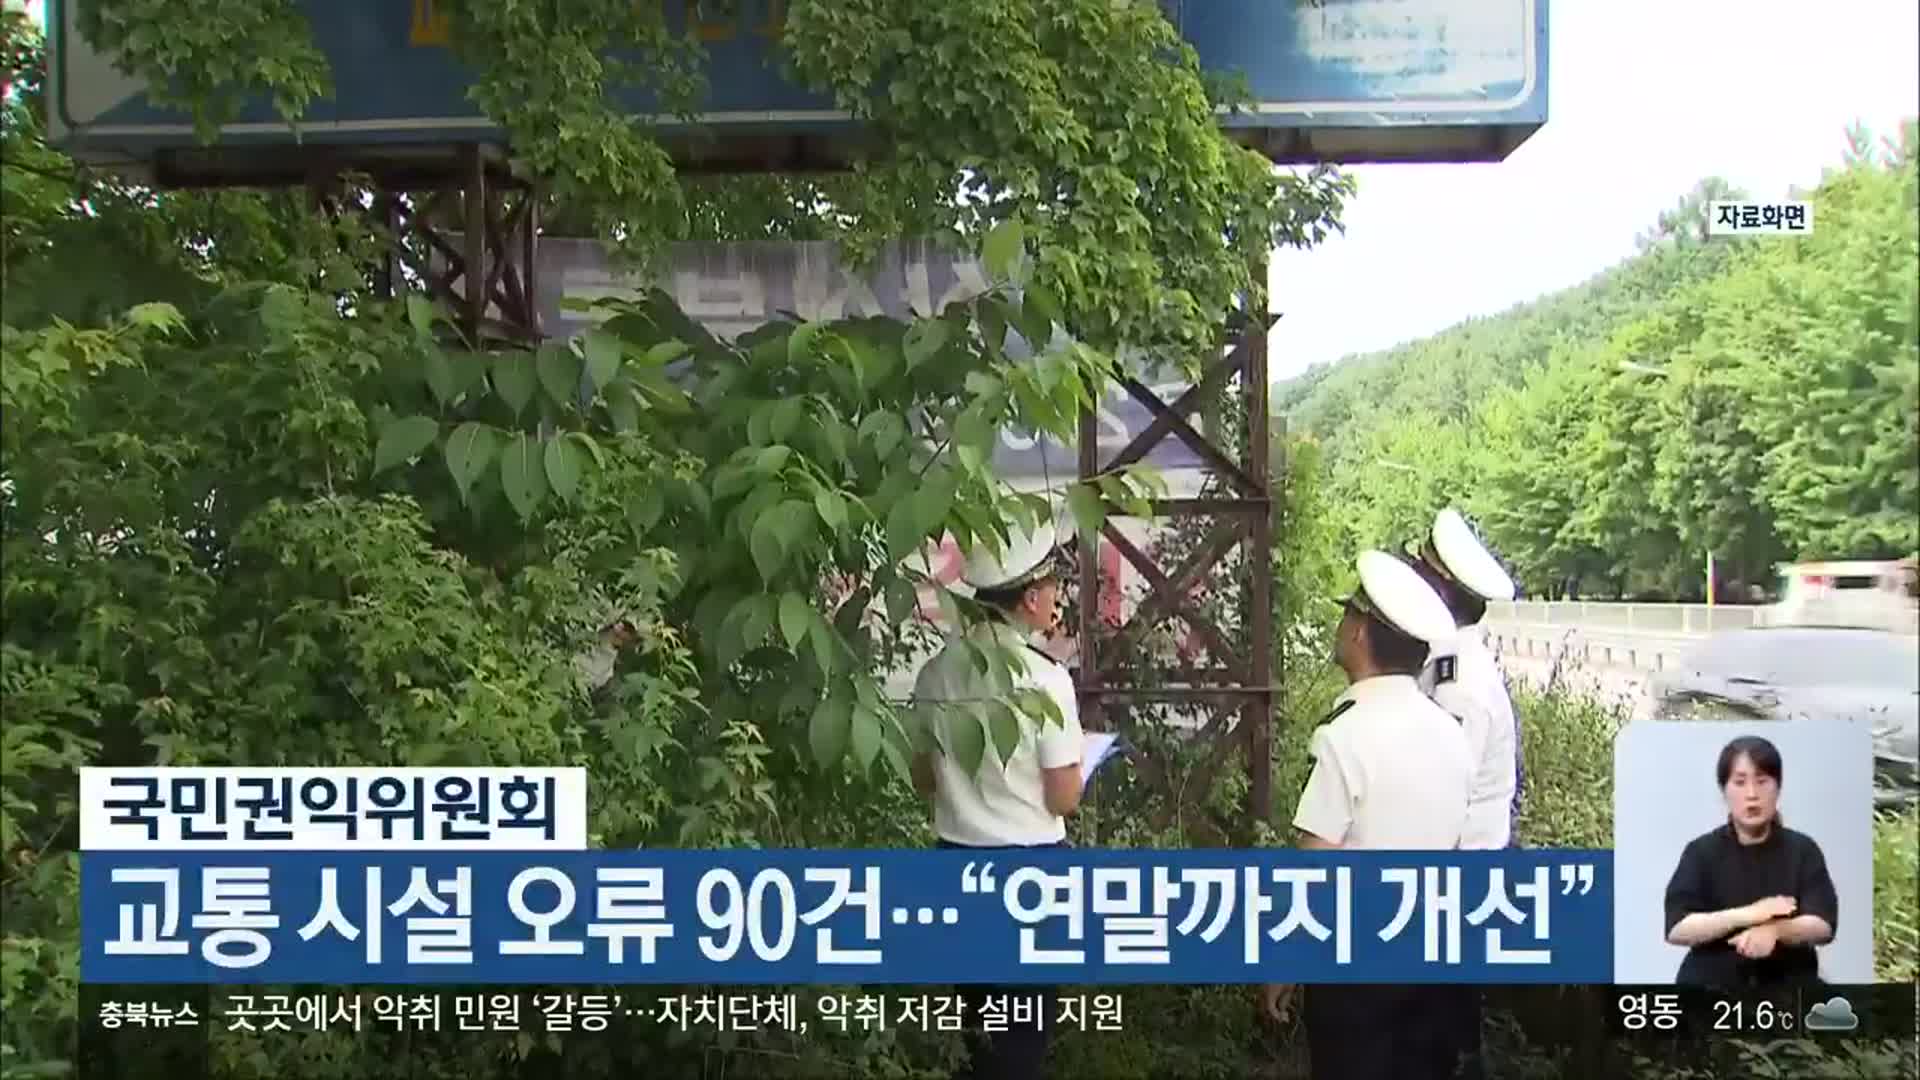 국민권익위원회, 교통 시설 오류 90건…“연말까지 개선”